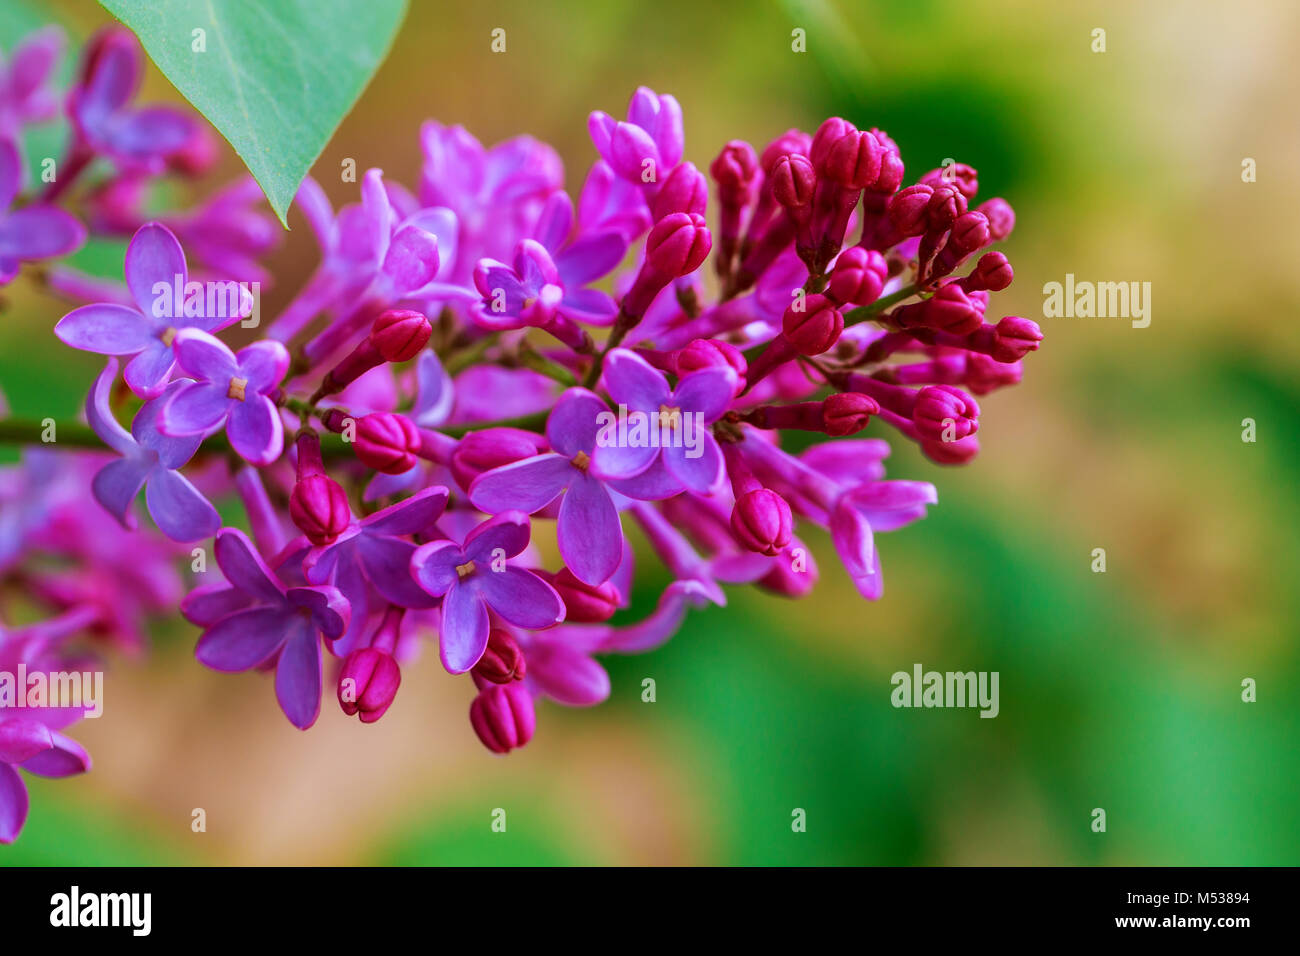 La texture, il motivo dello sfondo. Fiori lilla. di un pallido rosa-color viola. Ampio giardino arbusto con viola o bianco fiori profumati. Foto Stock